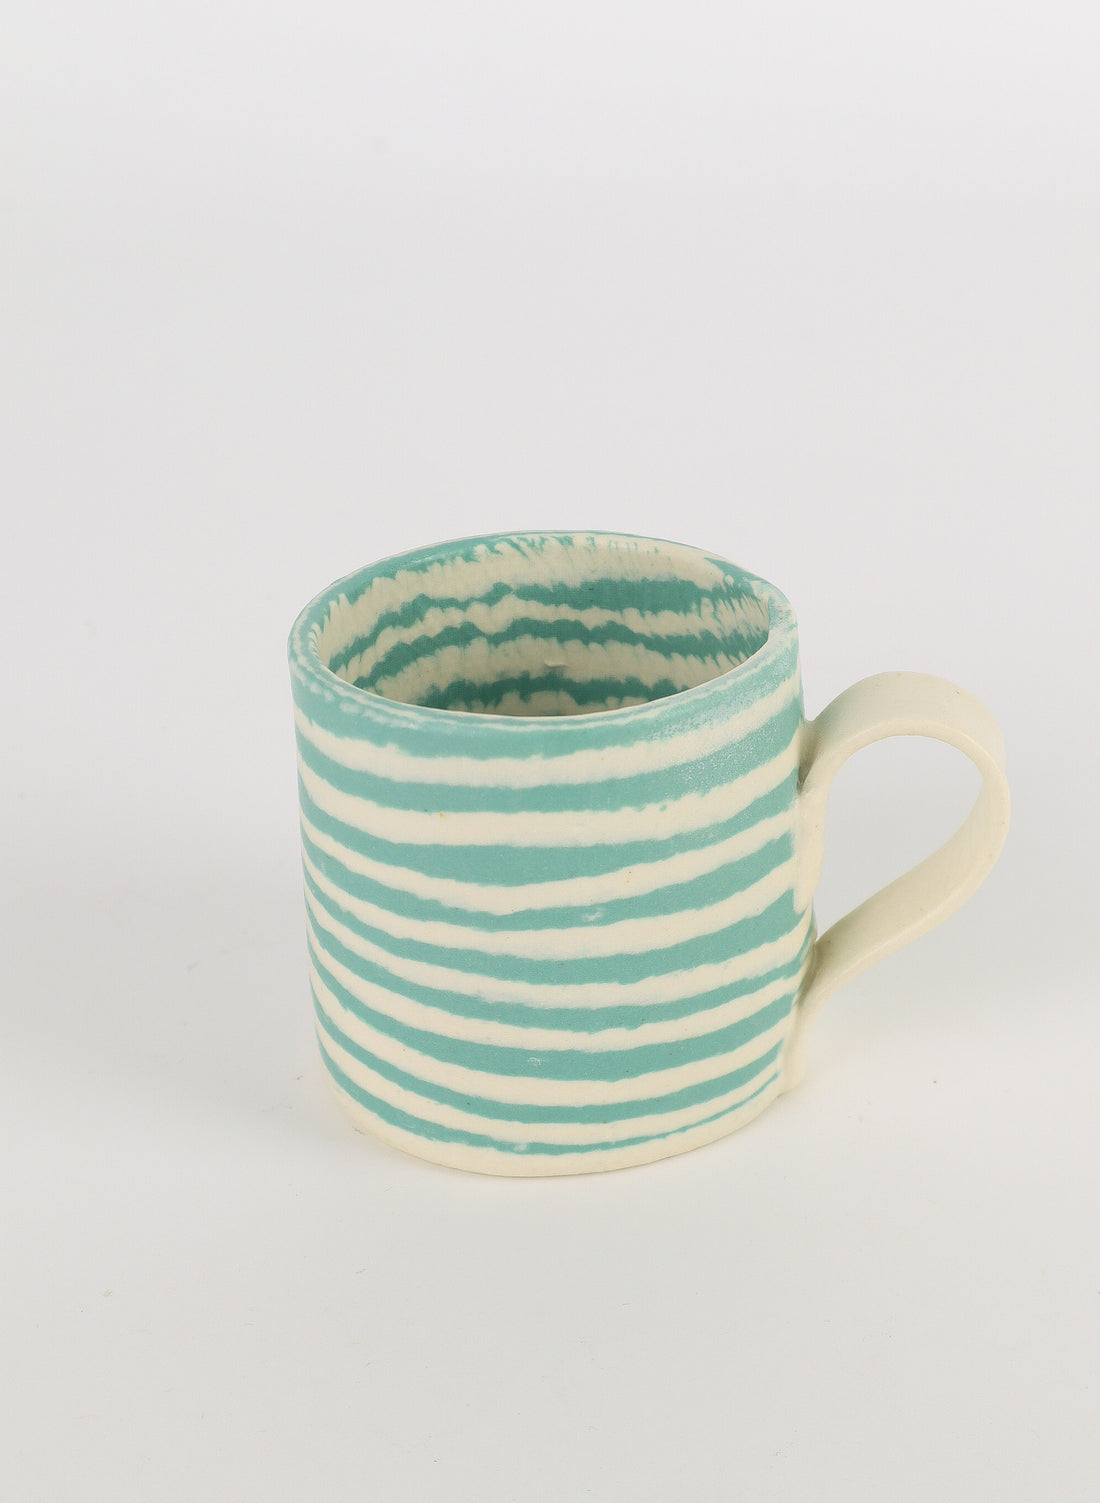 Nerikoni Turquoise Mug - Medium